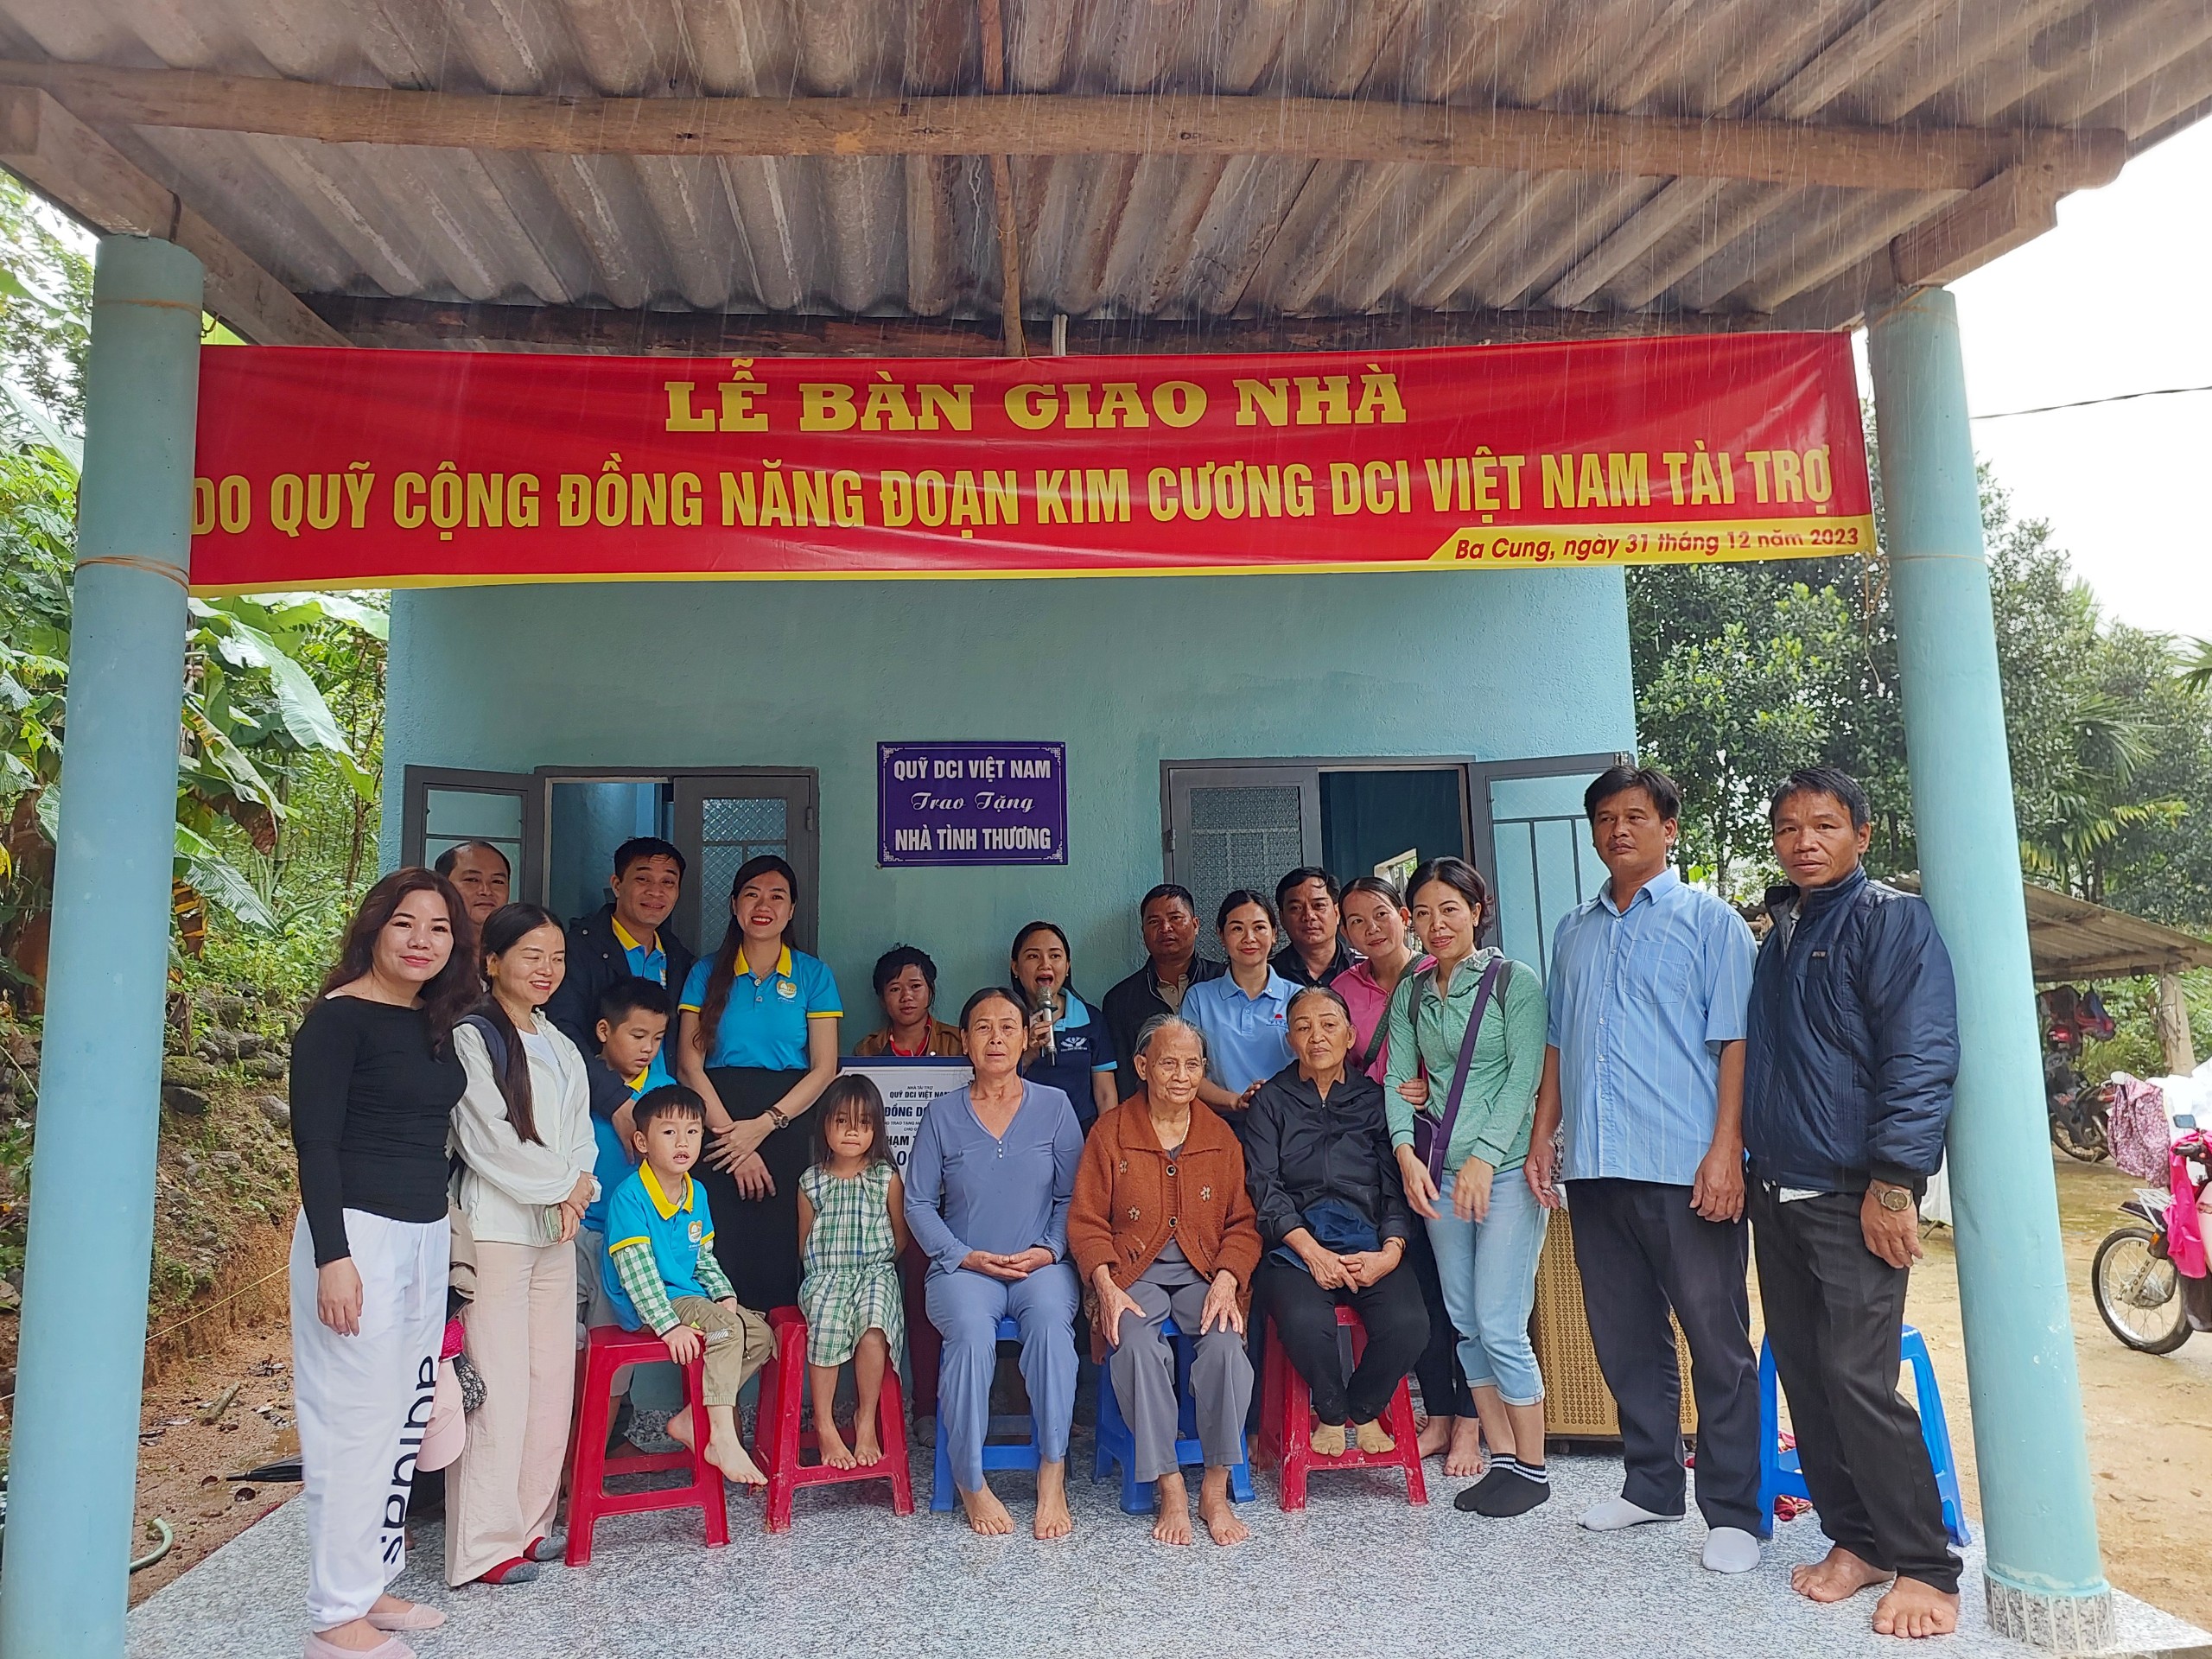 UBND xã Ba Cung tổ chức nghiệm thu, bàn giao nhà tình thương cho người nghèo do quỹ DCI tài trợ